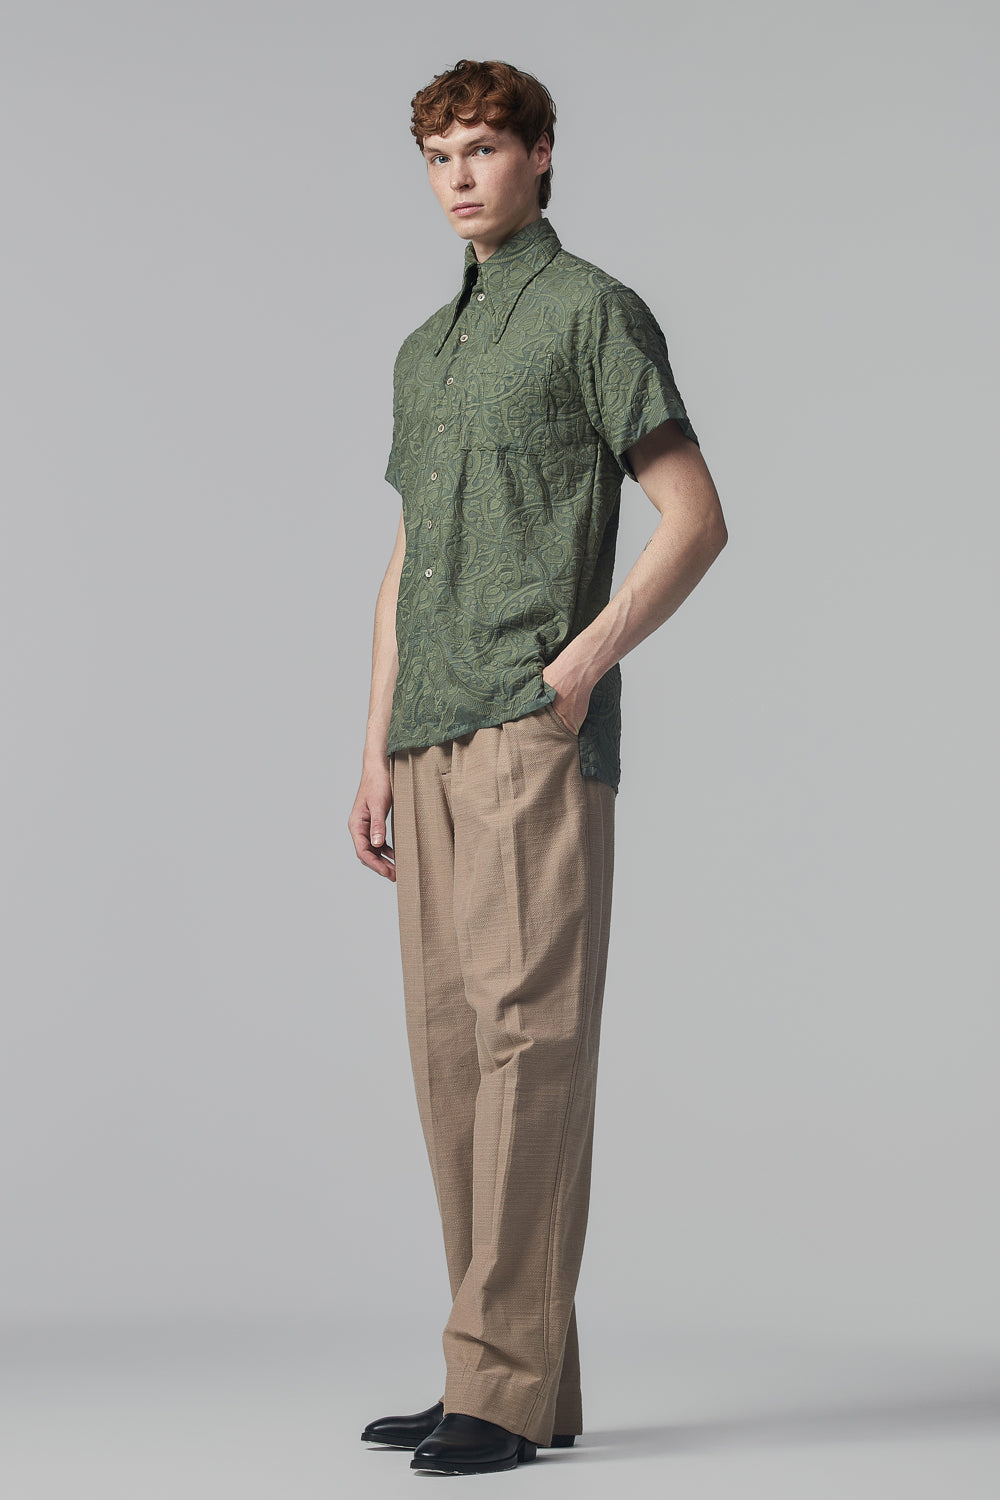 Camisa de Mangas Curtas em Algodão Verde-Eucalipto Bordado ao Estilo Art-Nouveau